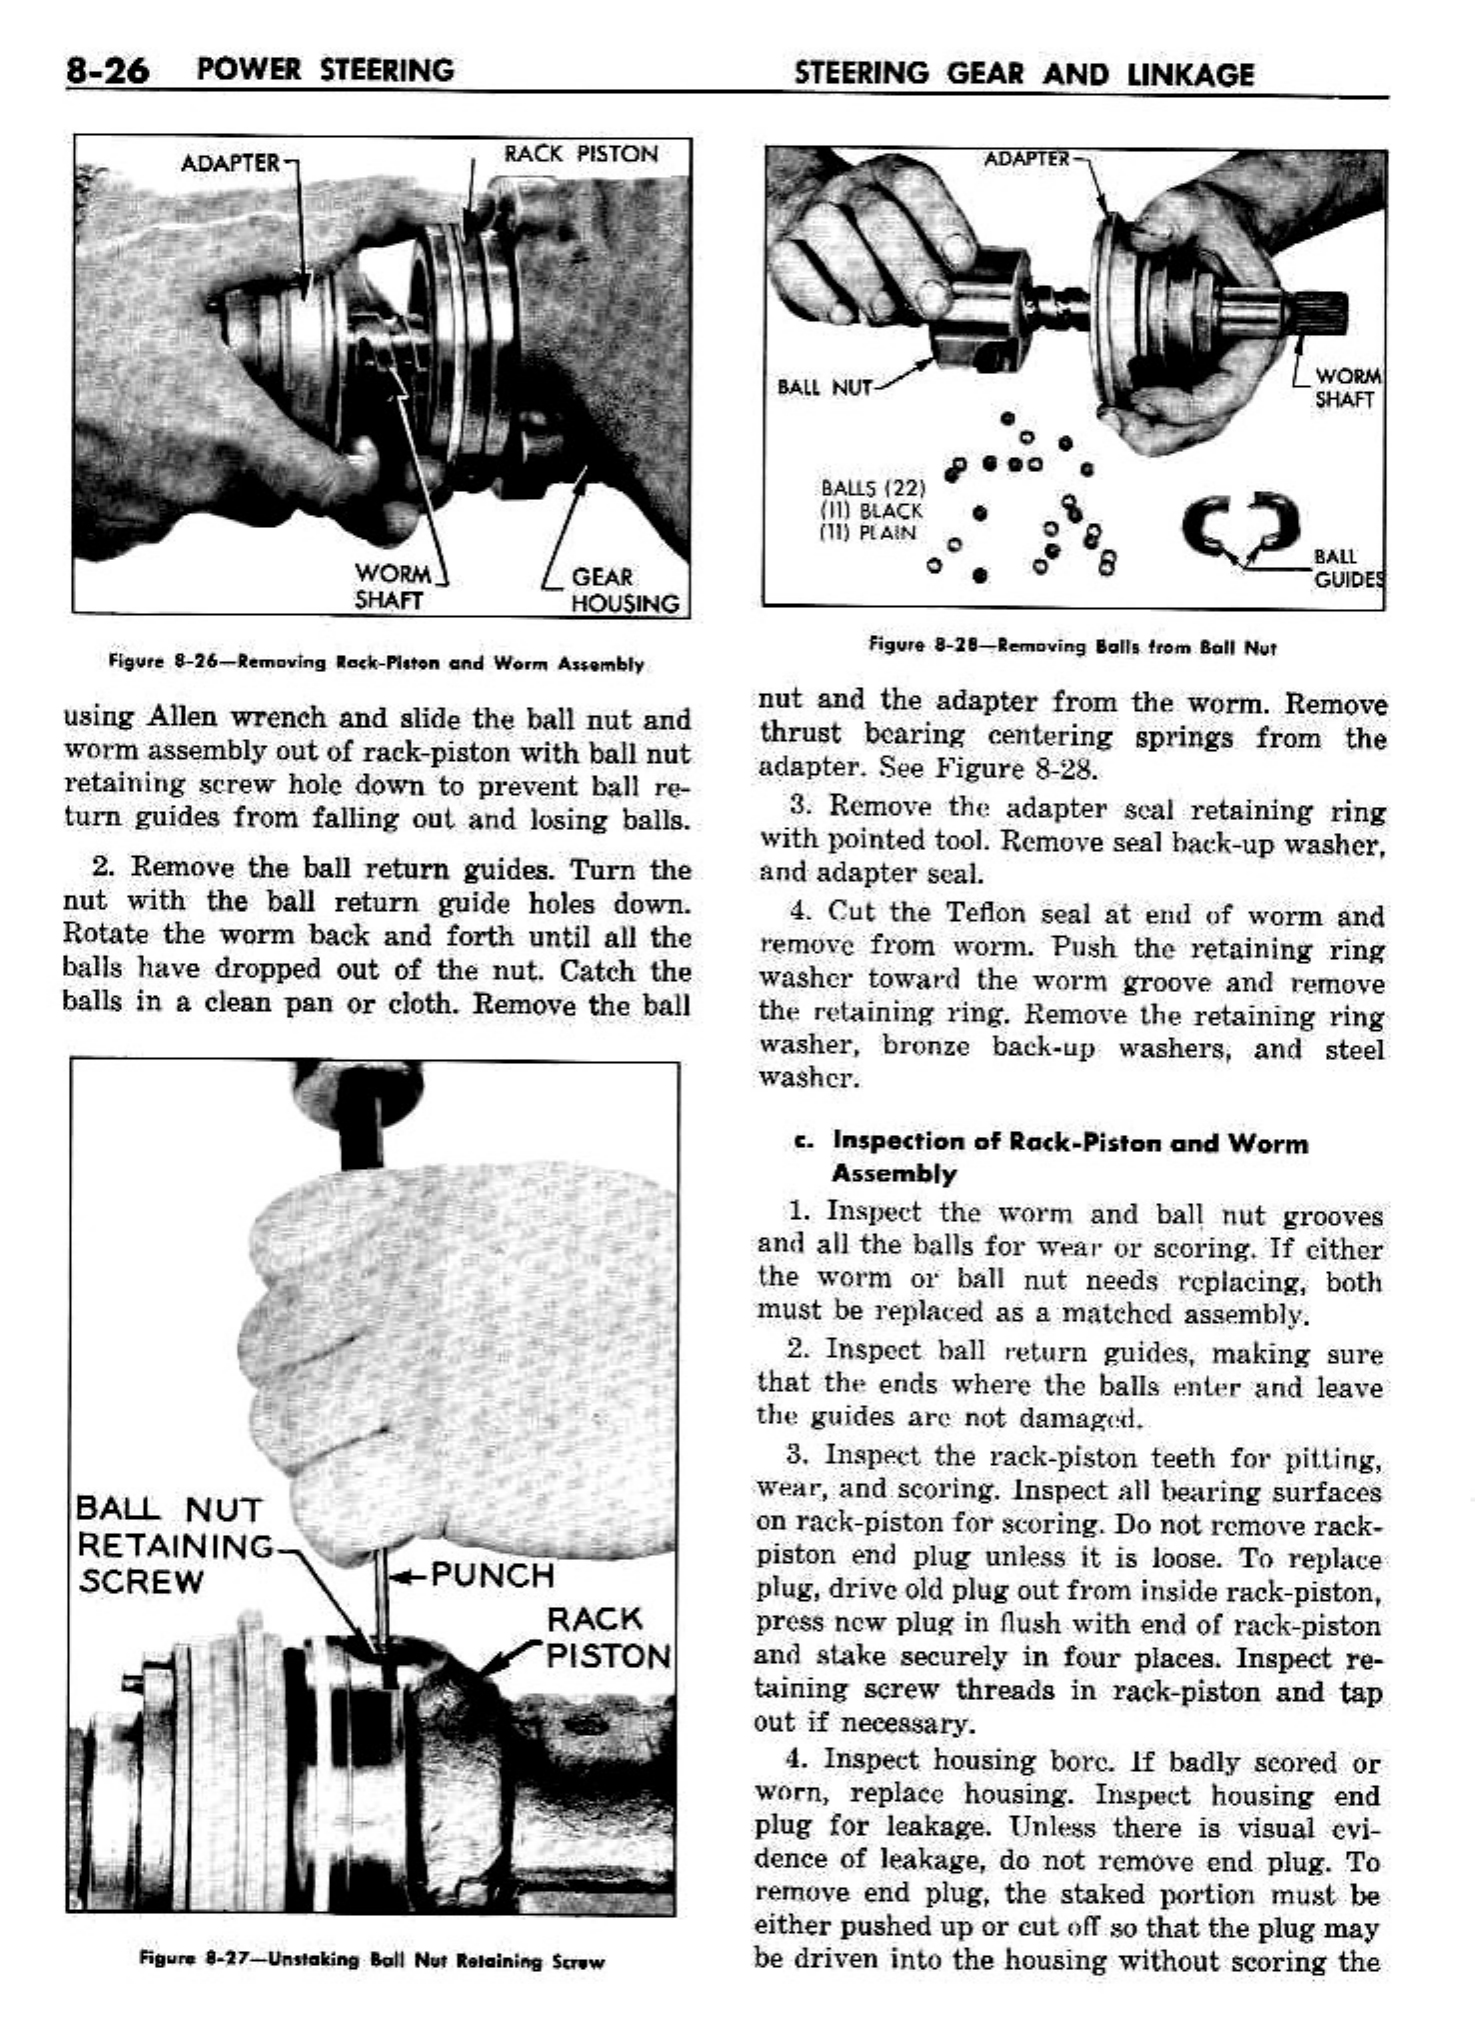 n_09 1958 Buick Shop Manual - Steering_26.jpg